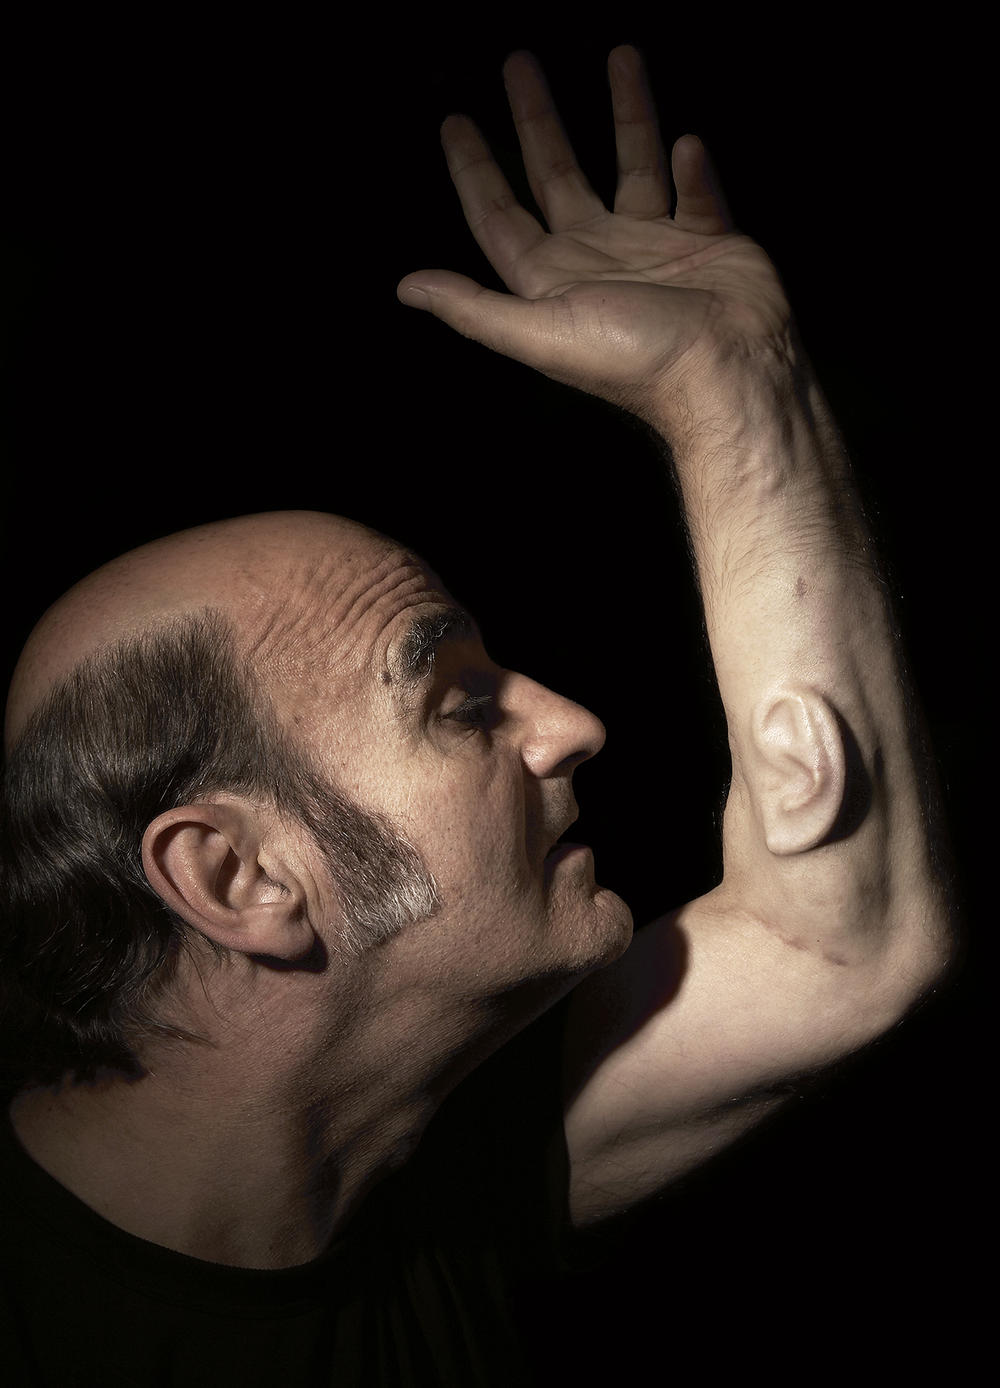 Ear on Arm Stelarc - Photographer- Dean Winter